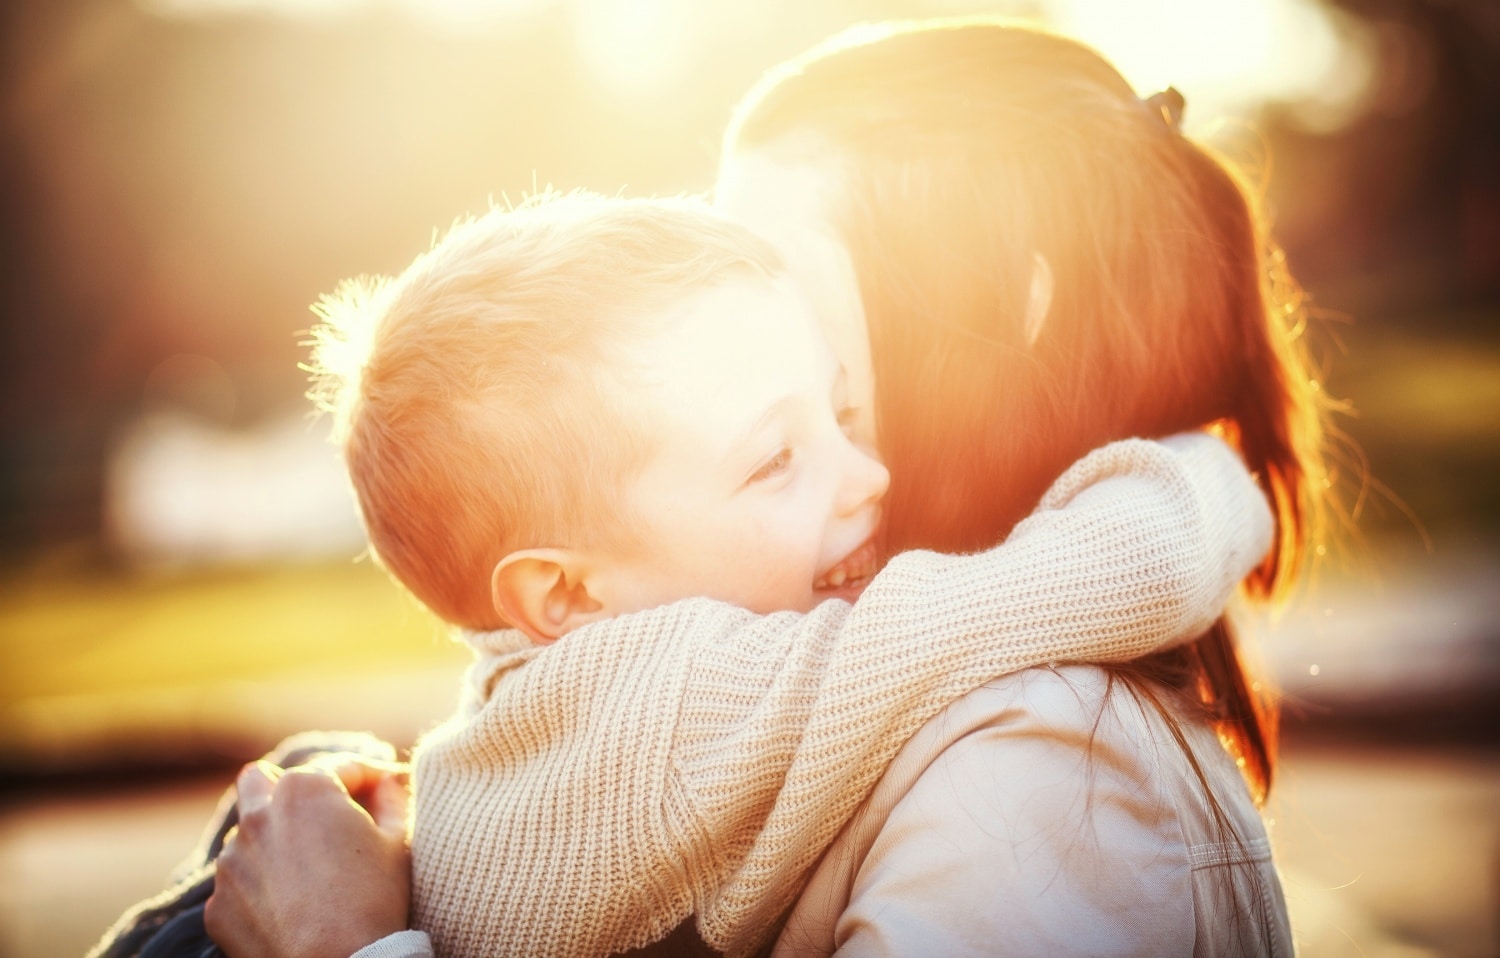 A szülő viselkedése felülírhatja a géneket? Így fejlődik a gyerek